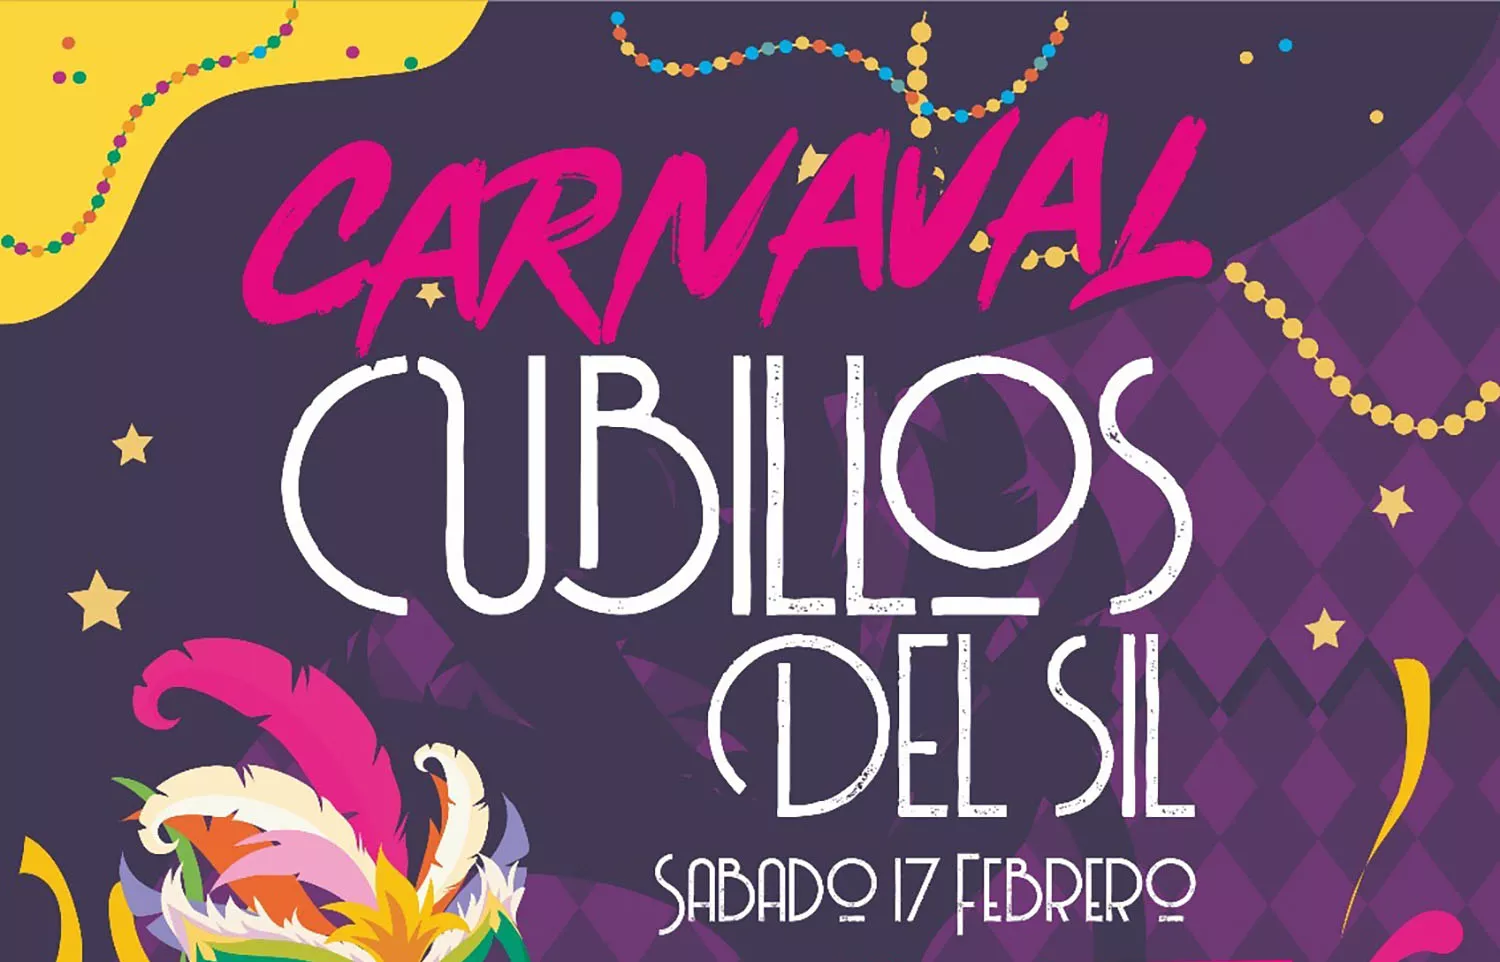 Cartel del Carnaval de Cubillos del Sil.